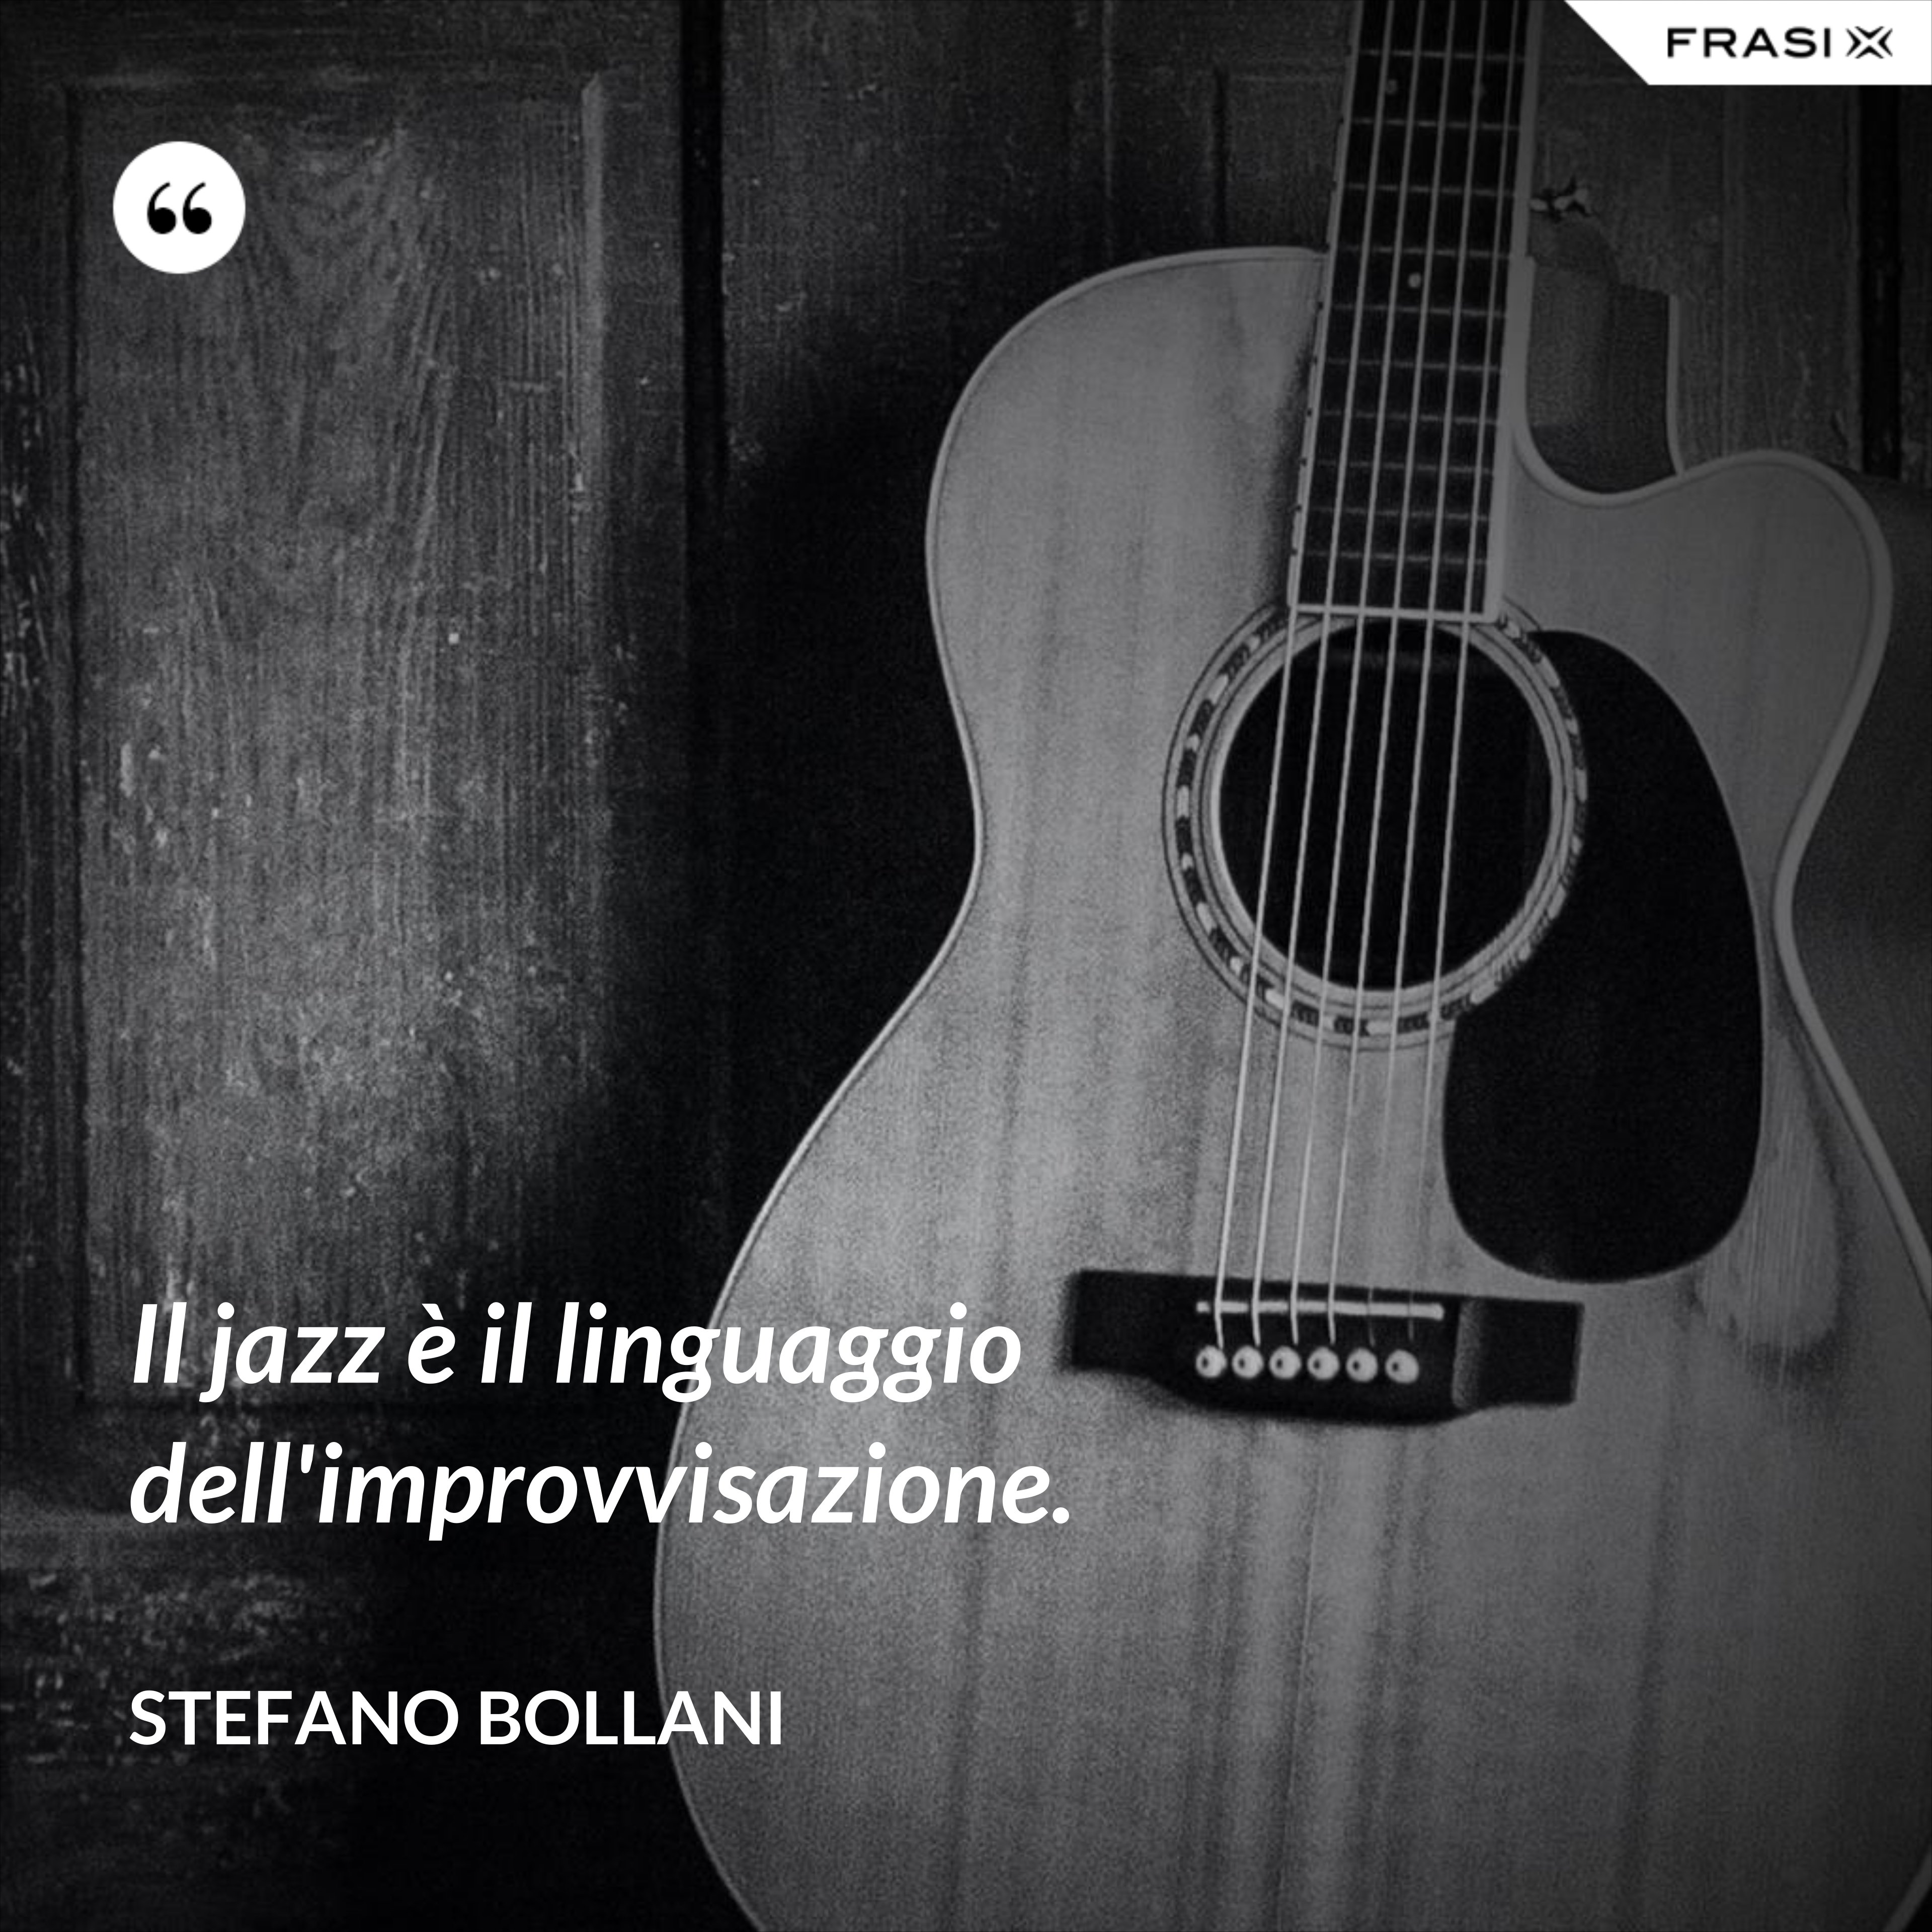 Il jazz è il linguaggio dell'improvvisazione. - Stefano Bollani